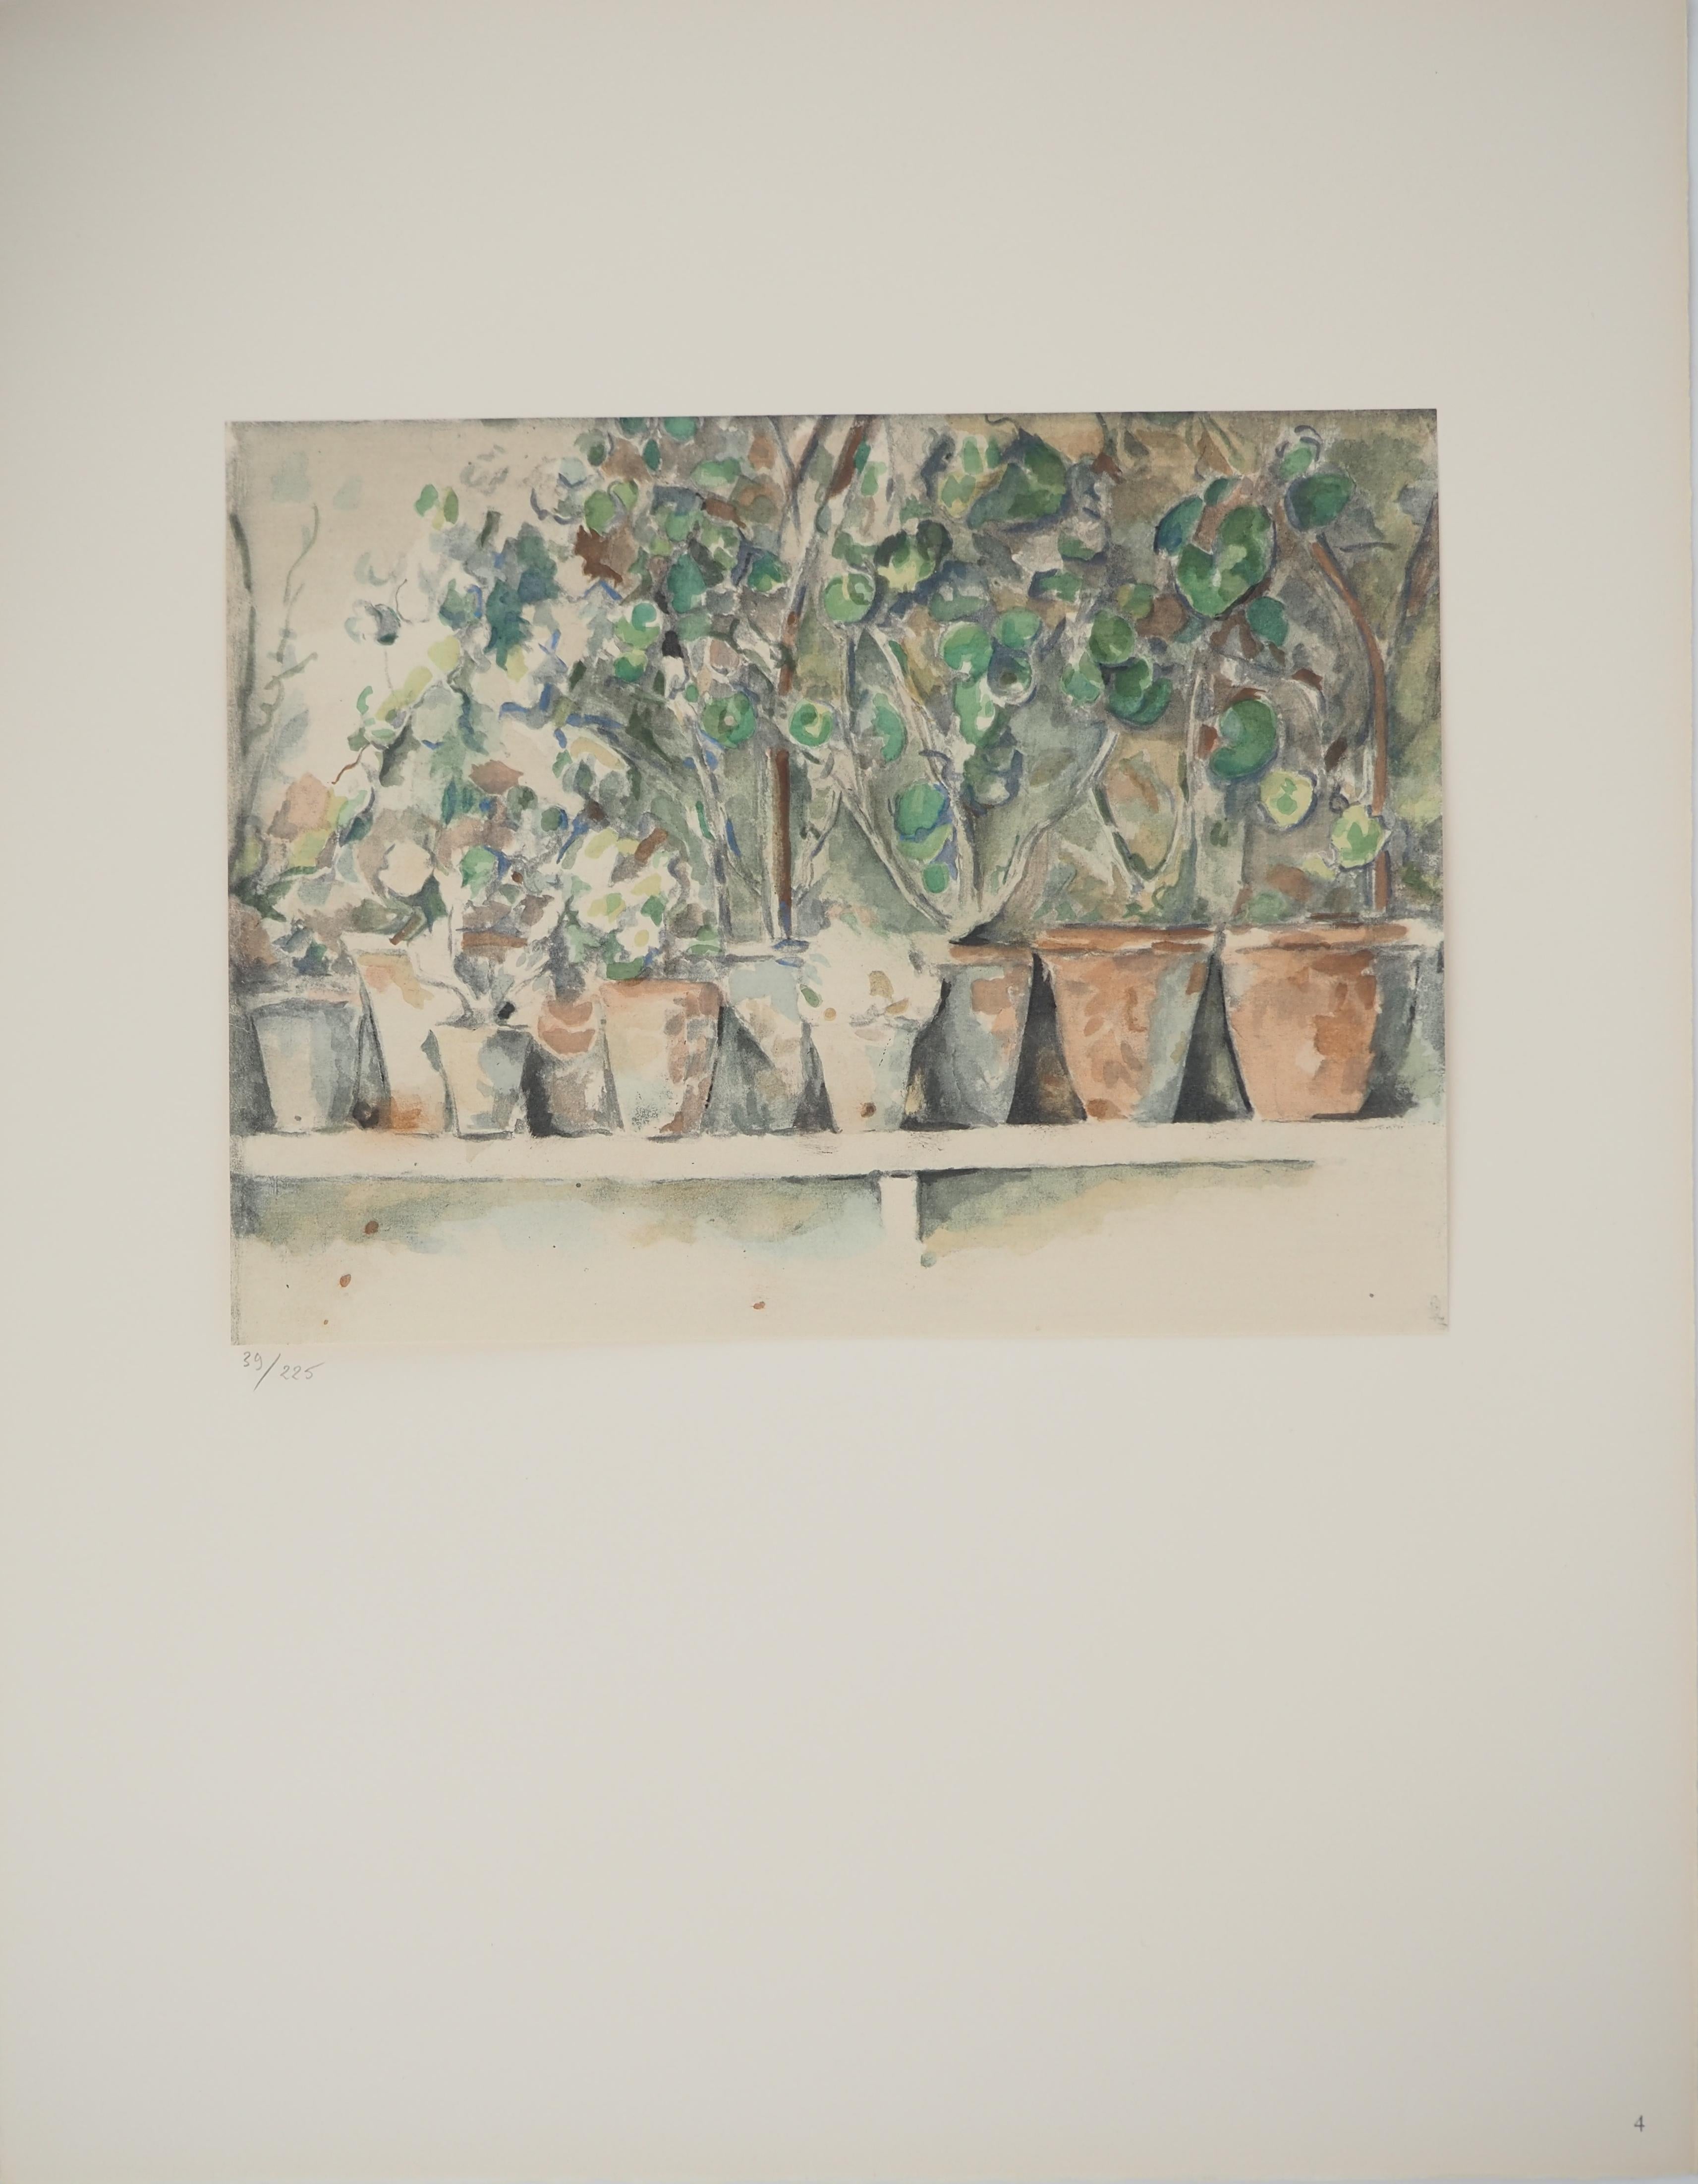 Geranium pots - Lithograph, 1971 - Print by Paul Cézanne